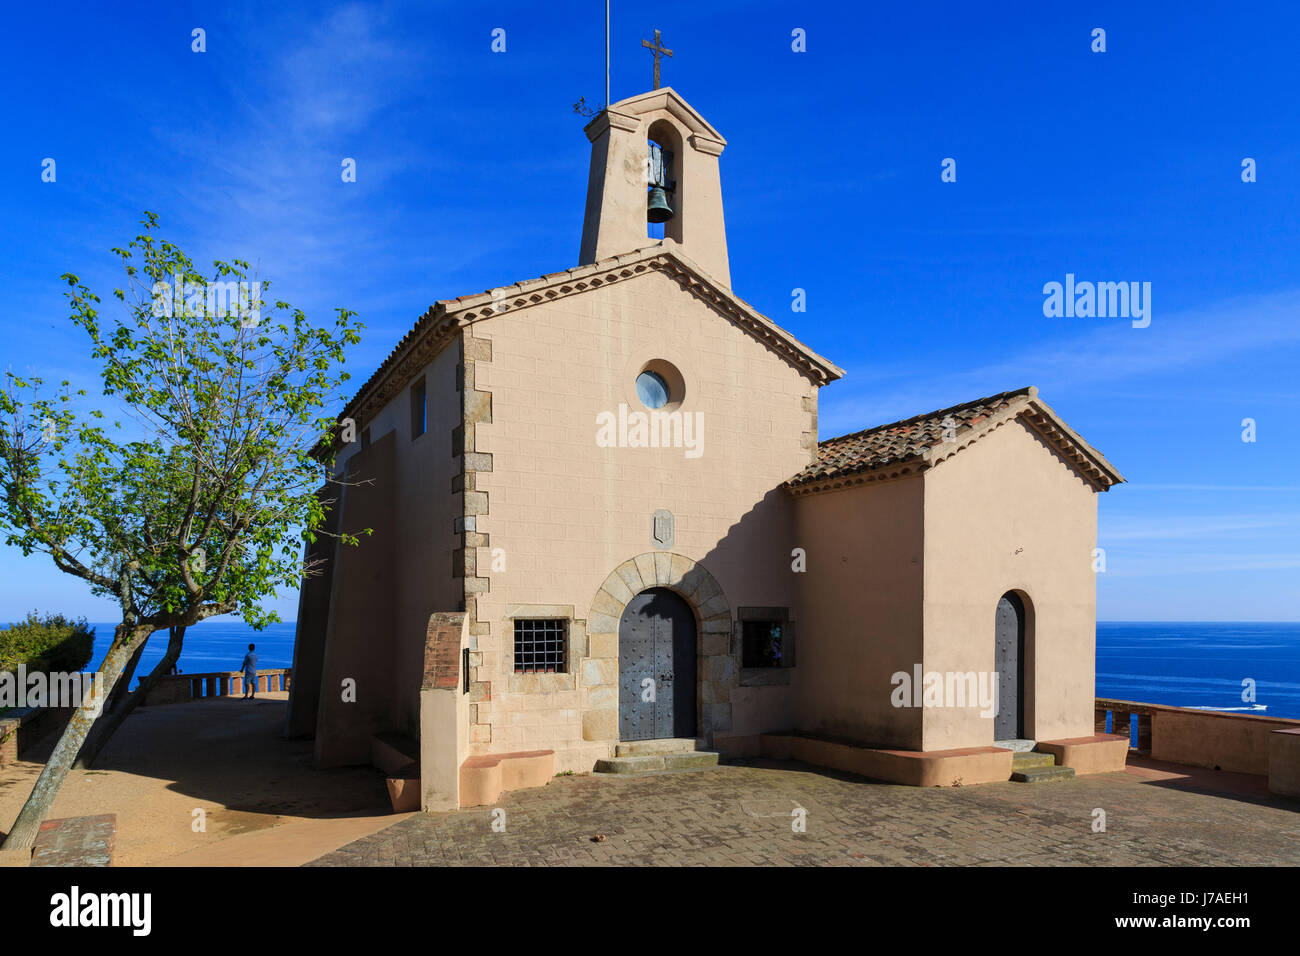 Spanien, Katalonien, Costa Brava, Sant Feliu de Guíxols, Kapelle von Sant Elm, seit diesem Panorama ist der Spitzname Costa Brava geboren Stockfoto